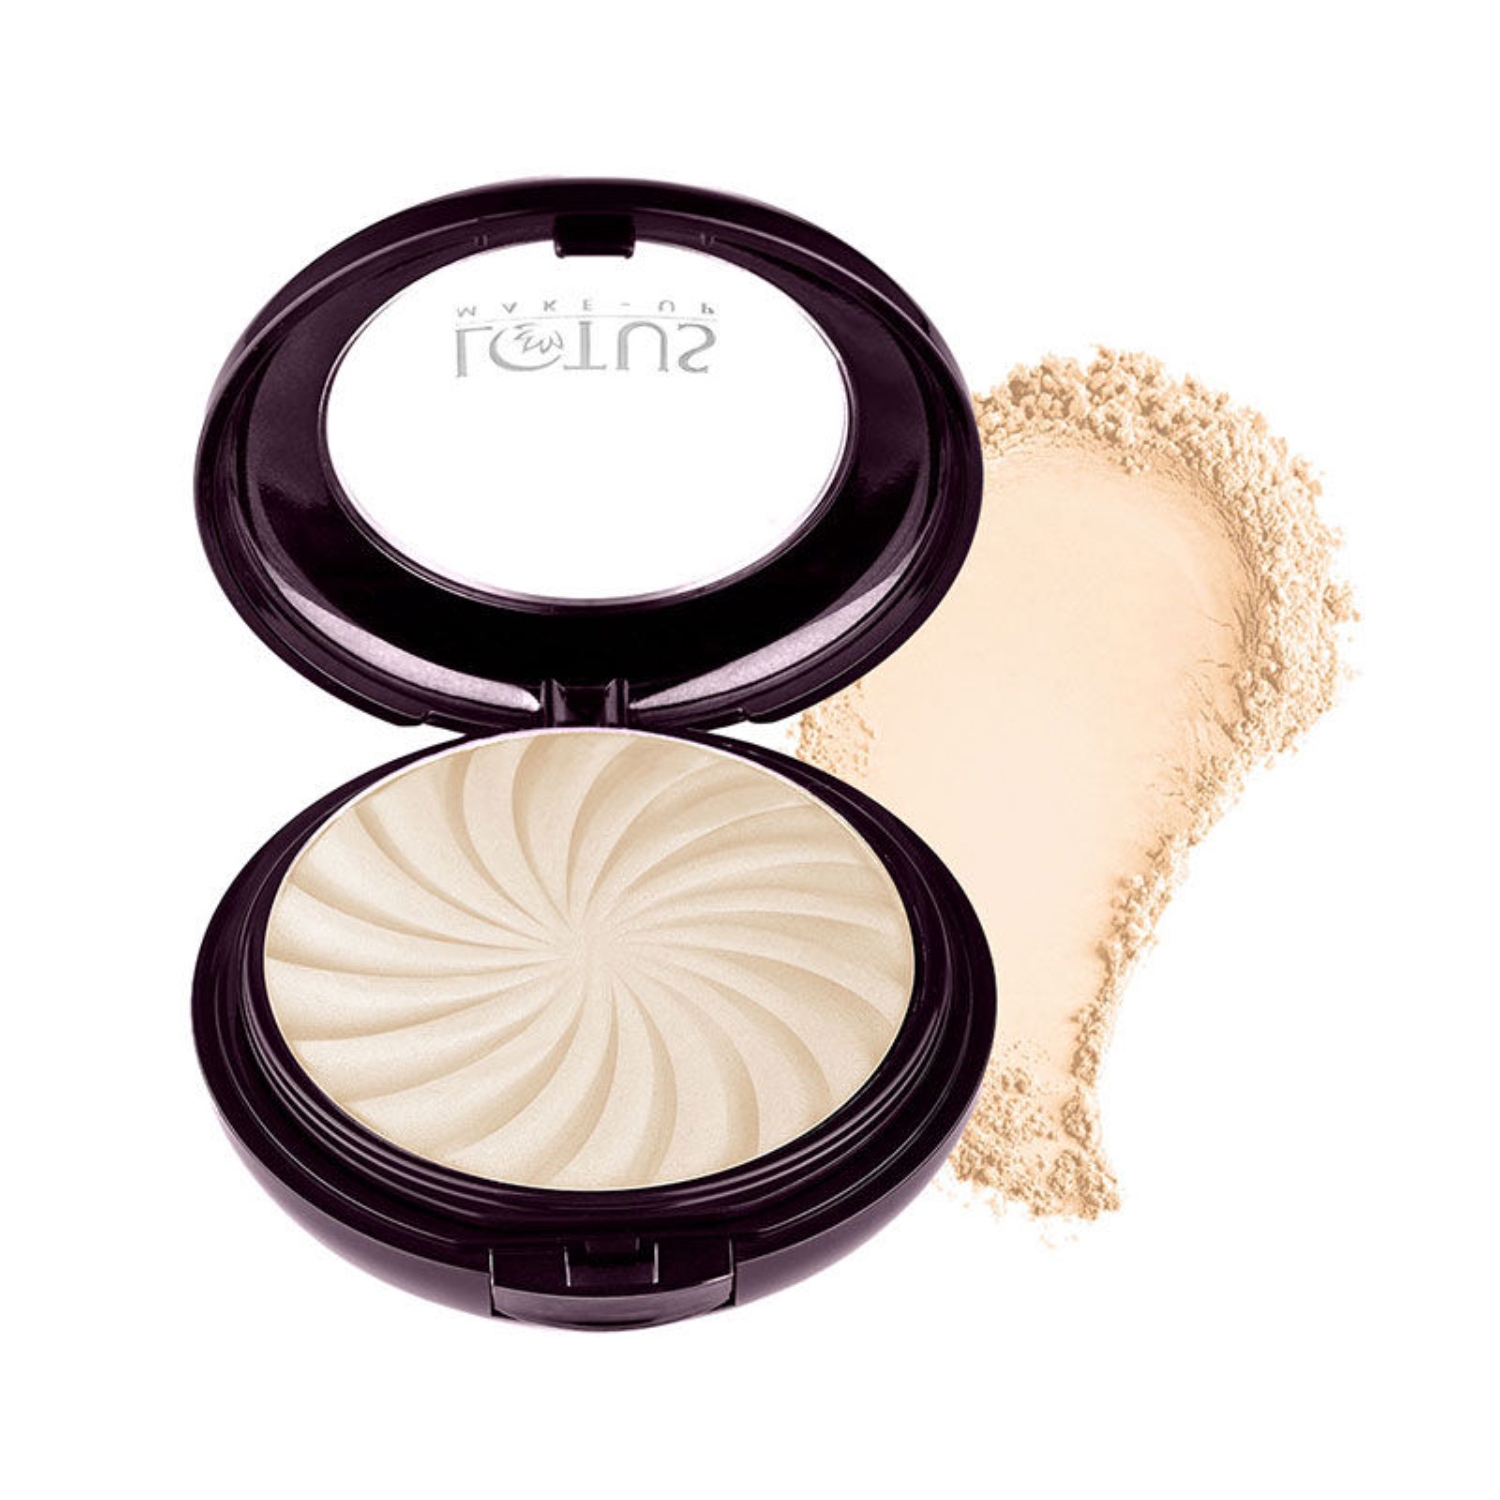 Lotus | Lotus Make -Up Proedit Silk Touch Perfecting Powder - SP01 Porcelain (10g)